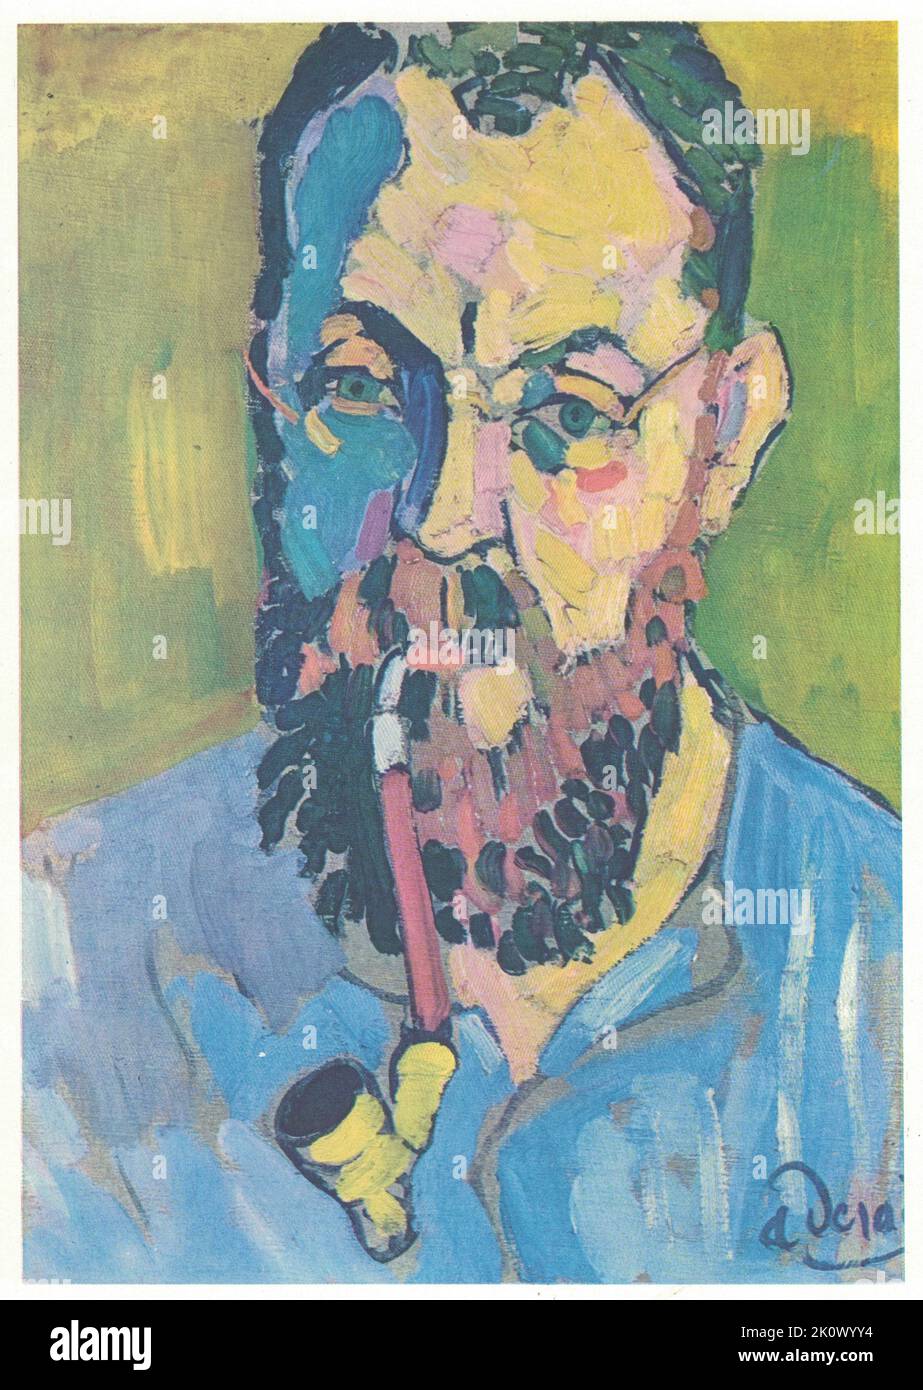 Ritratto di Matisse, 1905. Pittura di André Derain, olio, tela. André Derain è meglio conosciuto per i suoi contributi agli sviluppi del Fauvismo e del Cubismo, due movimenti d'avanguardia dall'inizio del 20th ° secolo. Derain è nato il 17 giugno 1880 a Chatou, appena fuori Parigi. Ha iniziato la sua formazione frequentando corsi di pittura sotto il simbolista francese Eugène Carrière all'Académie Carriere (1898-1899). Mentre era a scuola, ha befriended Henri Matisse, e nel 1900, ha incontrato Maurice de Vlaminck, con il quale ha poi condiviso uno studio. I tre spesso dipingevano insieme, ed erano strumentali Foto Stock